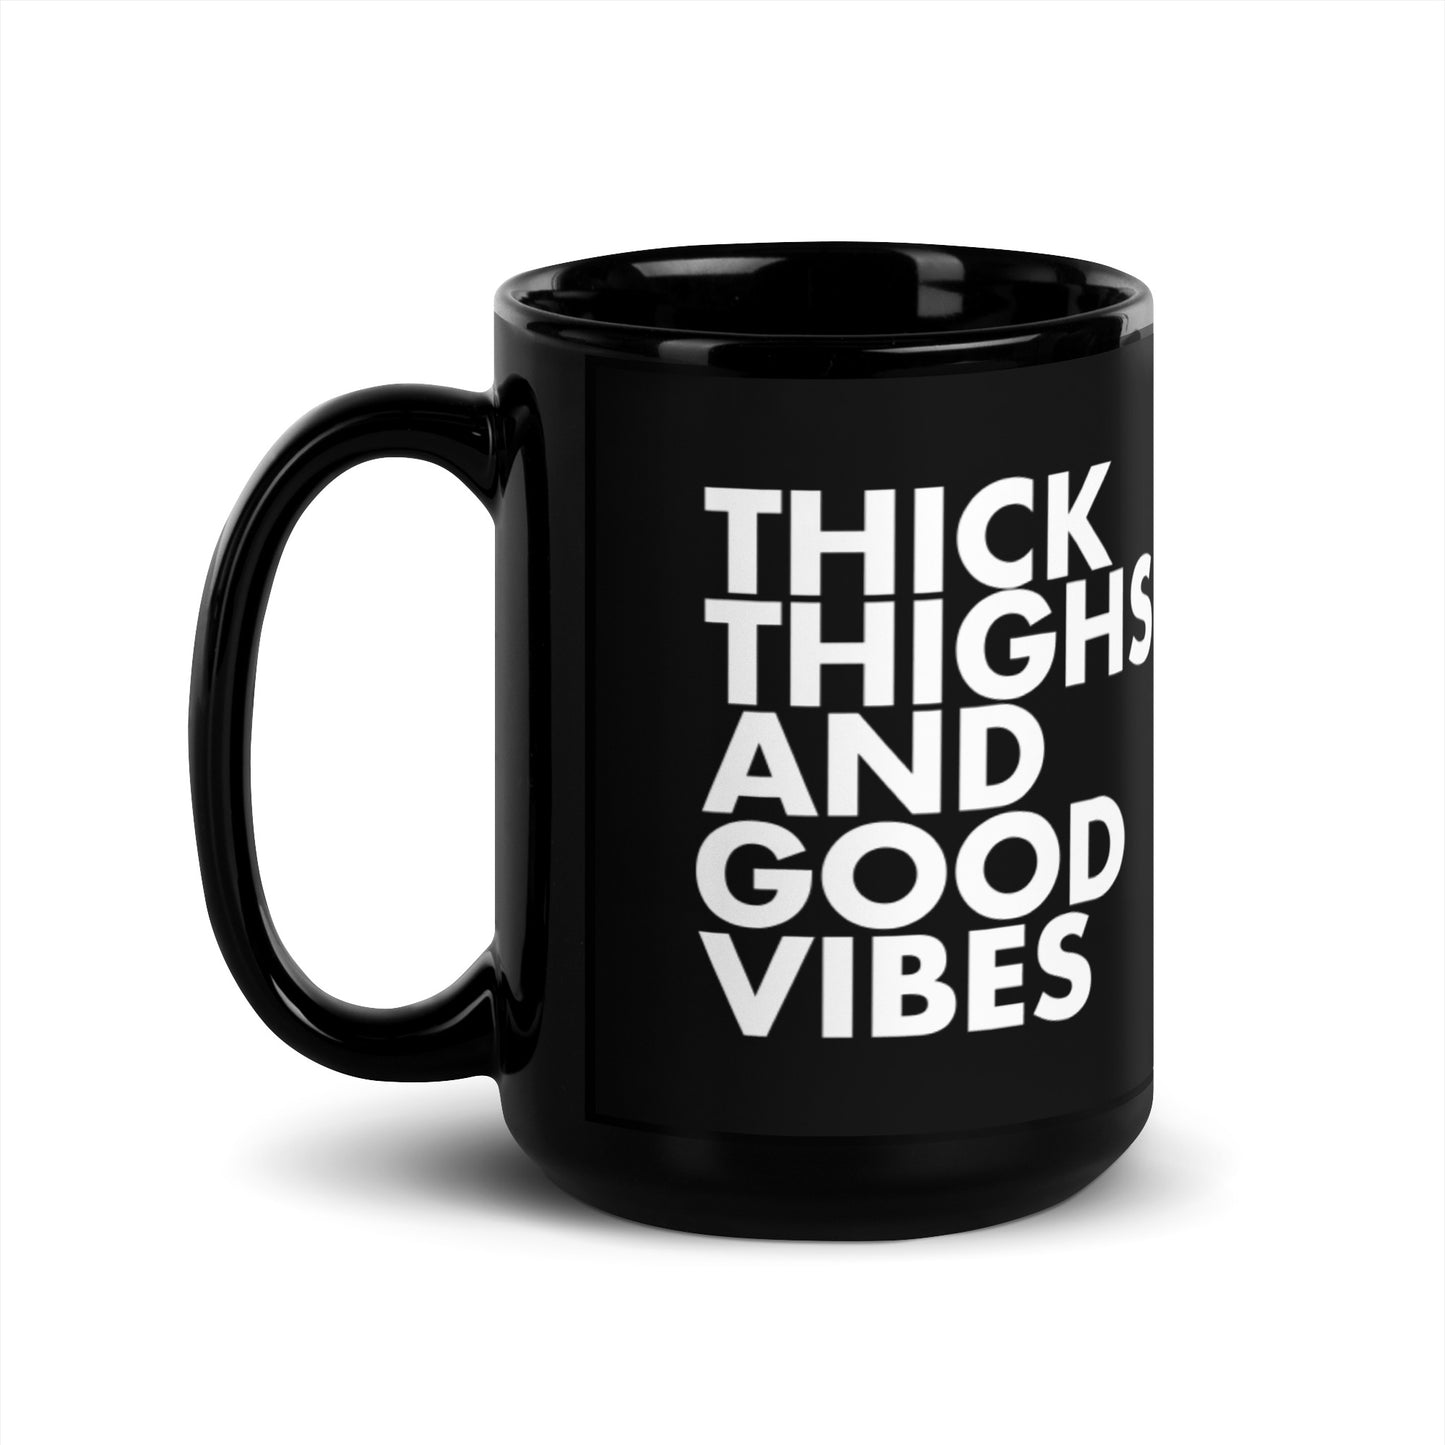 The THICK Thigh and Good Vibes Mug